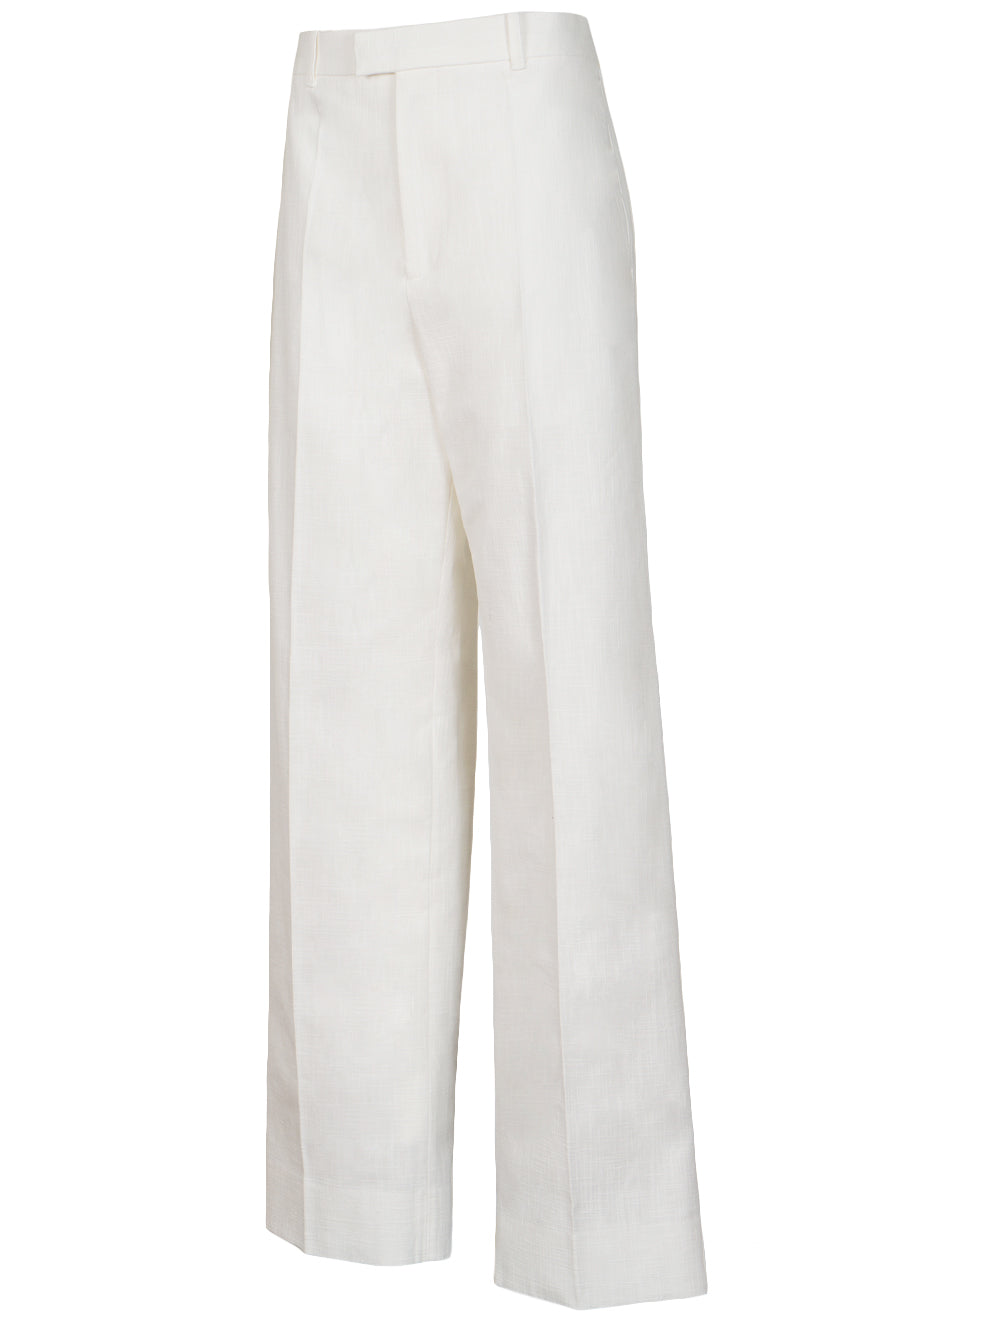 Pantalón de algodón texturizado 